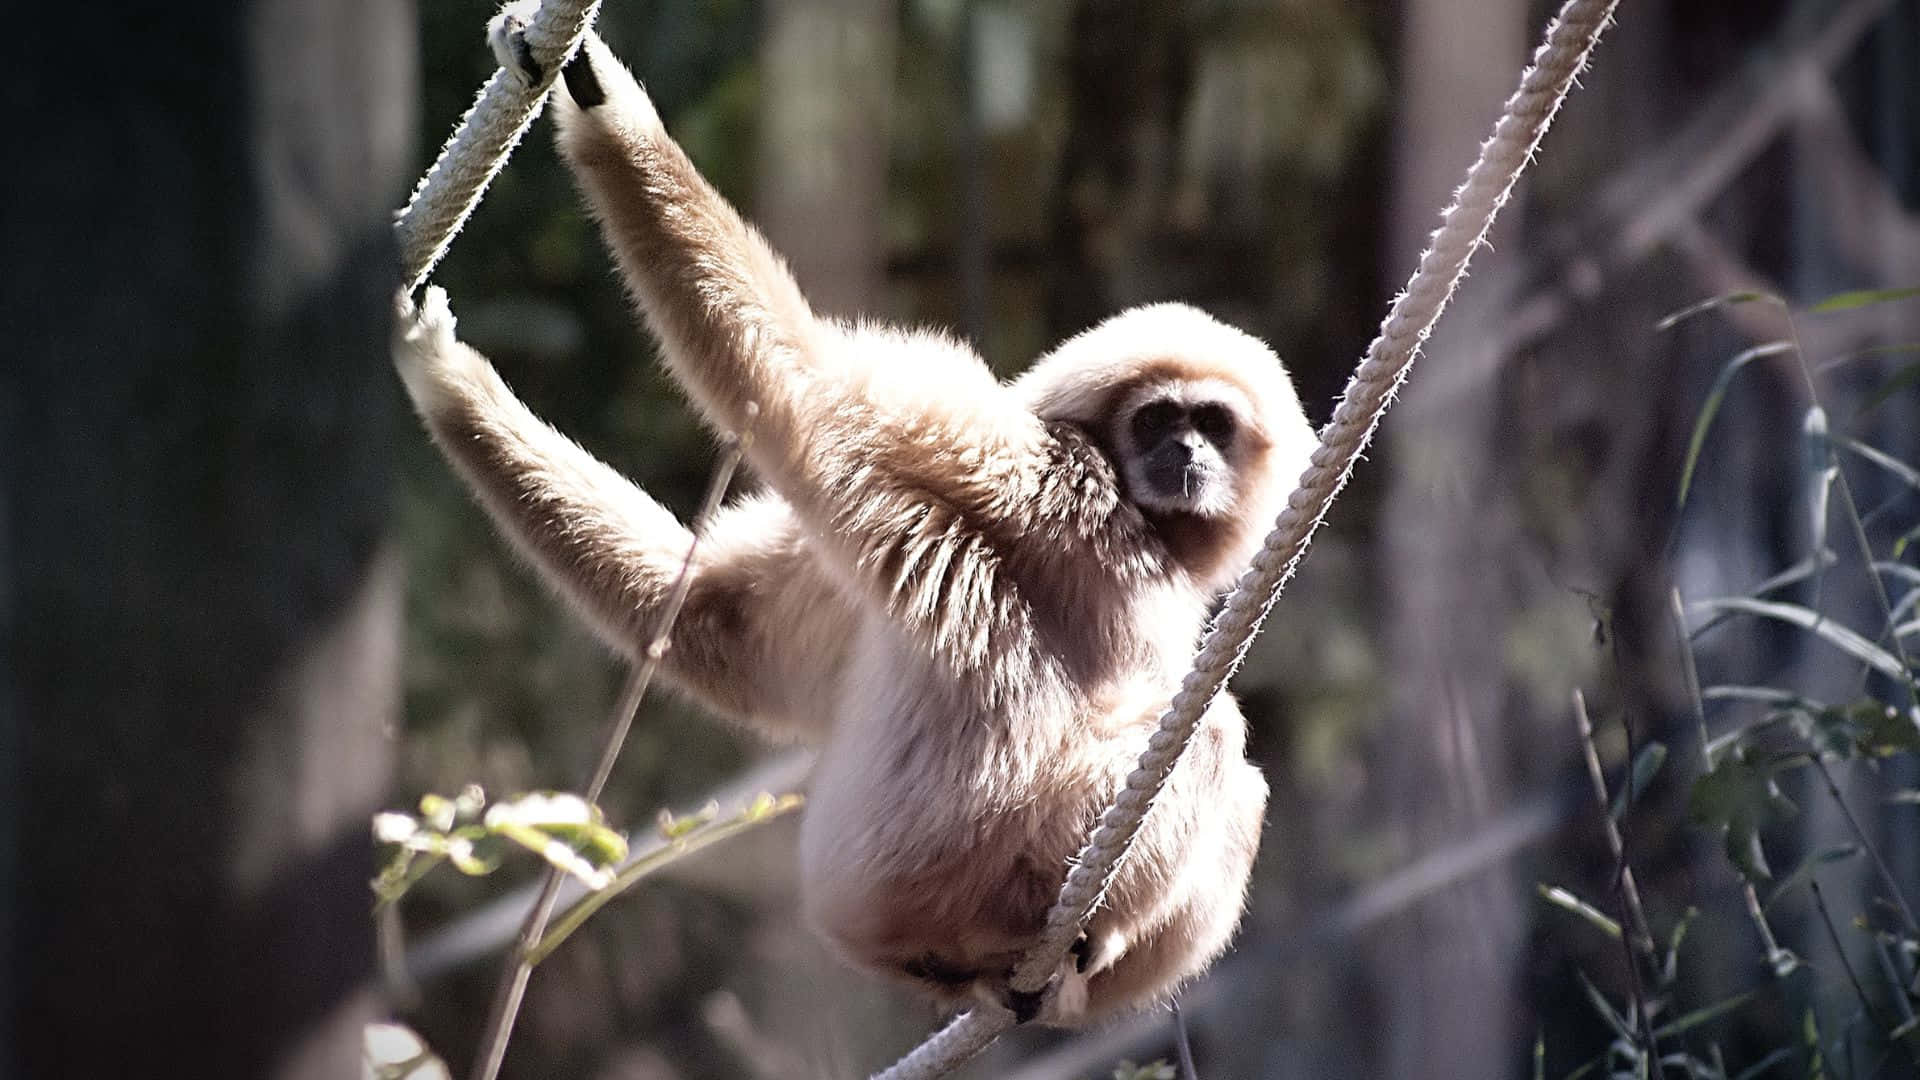 Enlysande Orange Gibbon Svingar Genom En Frodig, Grön Landskap Medan Den Vilar På En Gren.